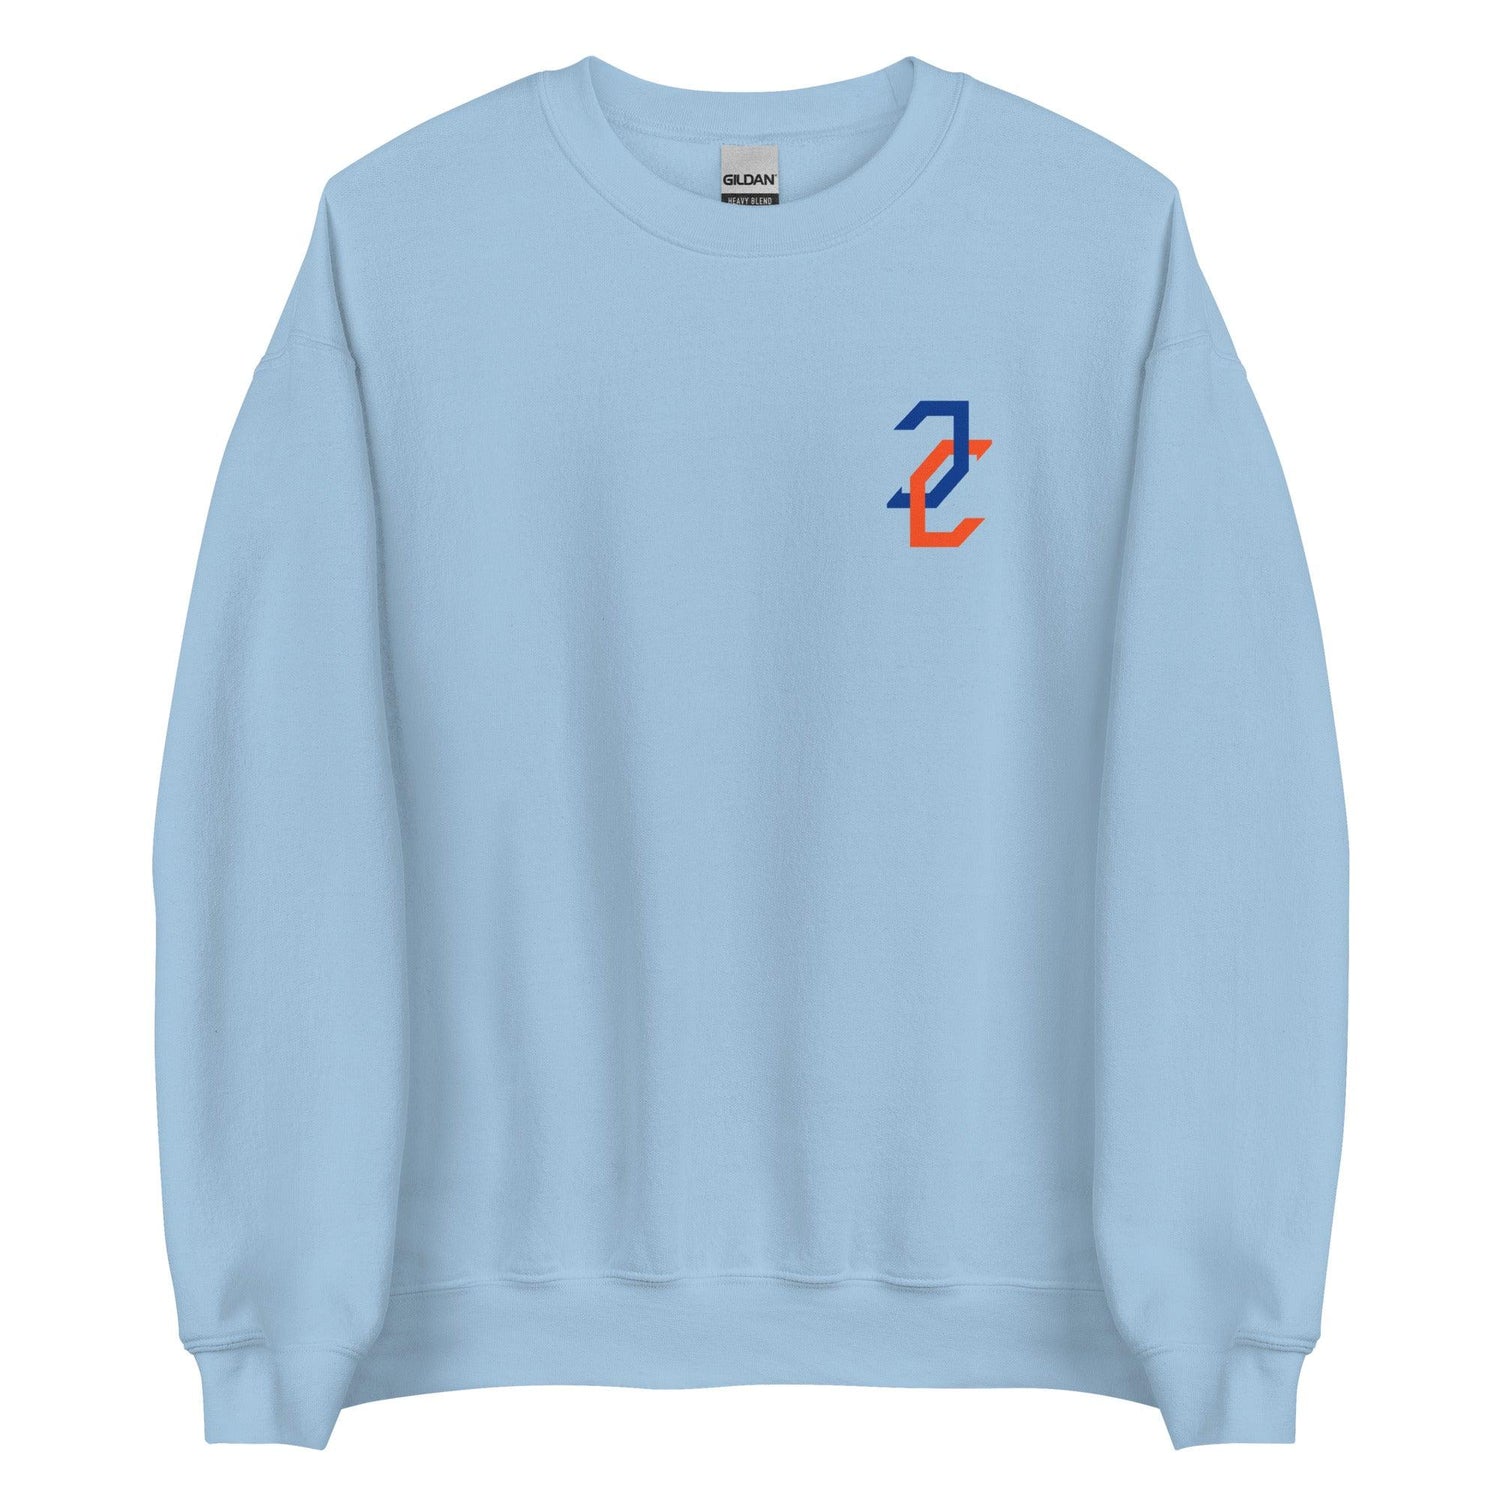 Jordan Castell "Essential" Sweatshirt - Fan Arch